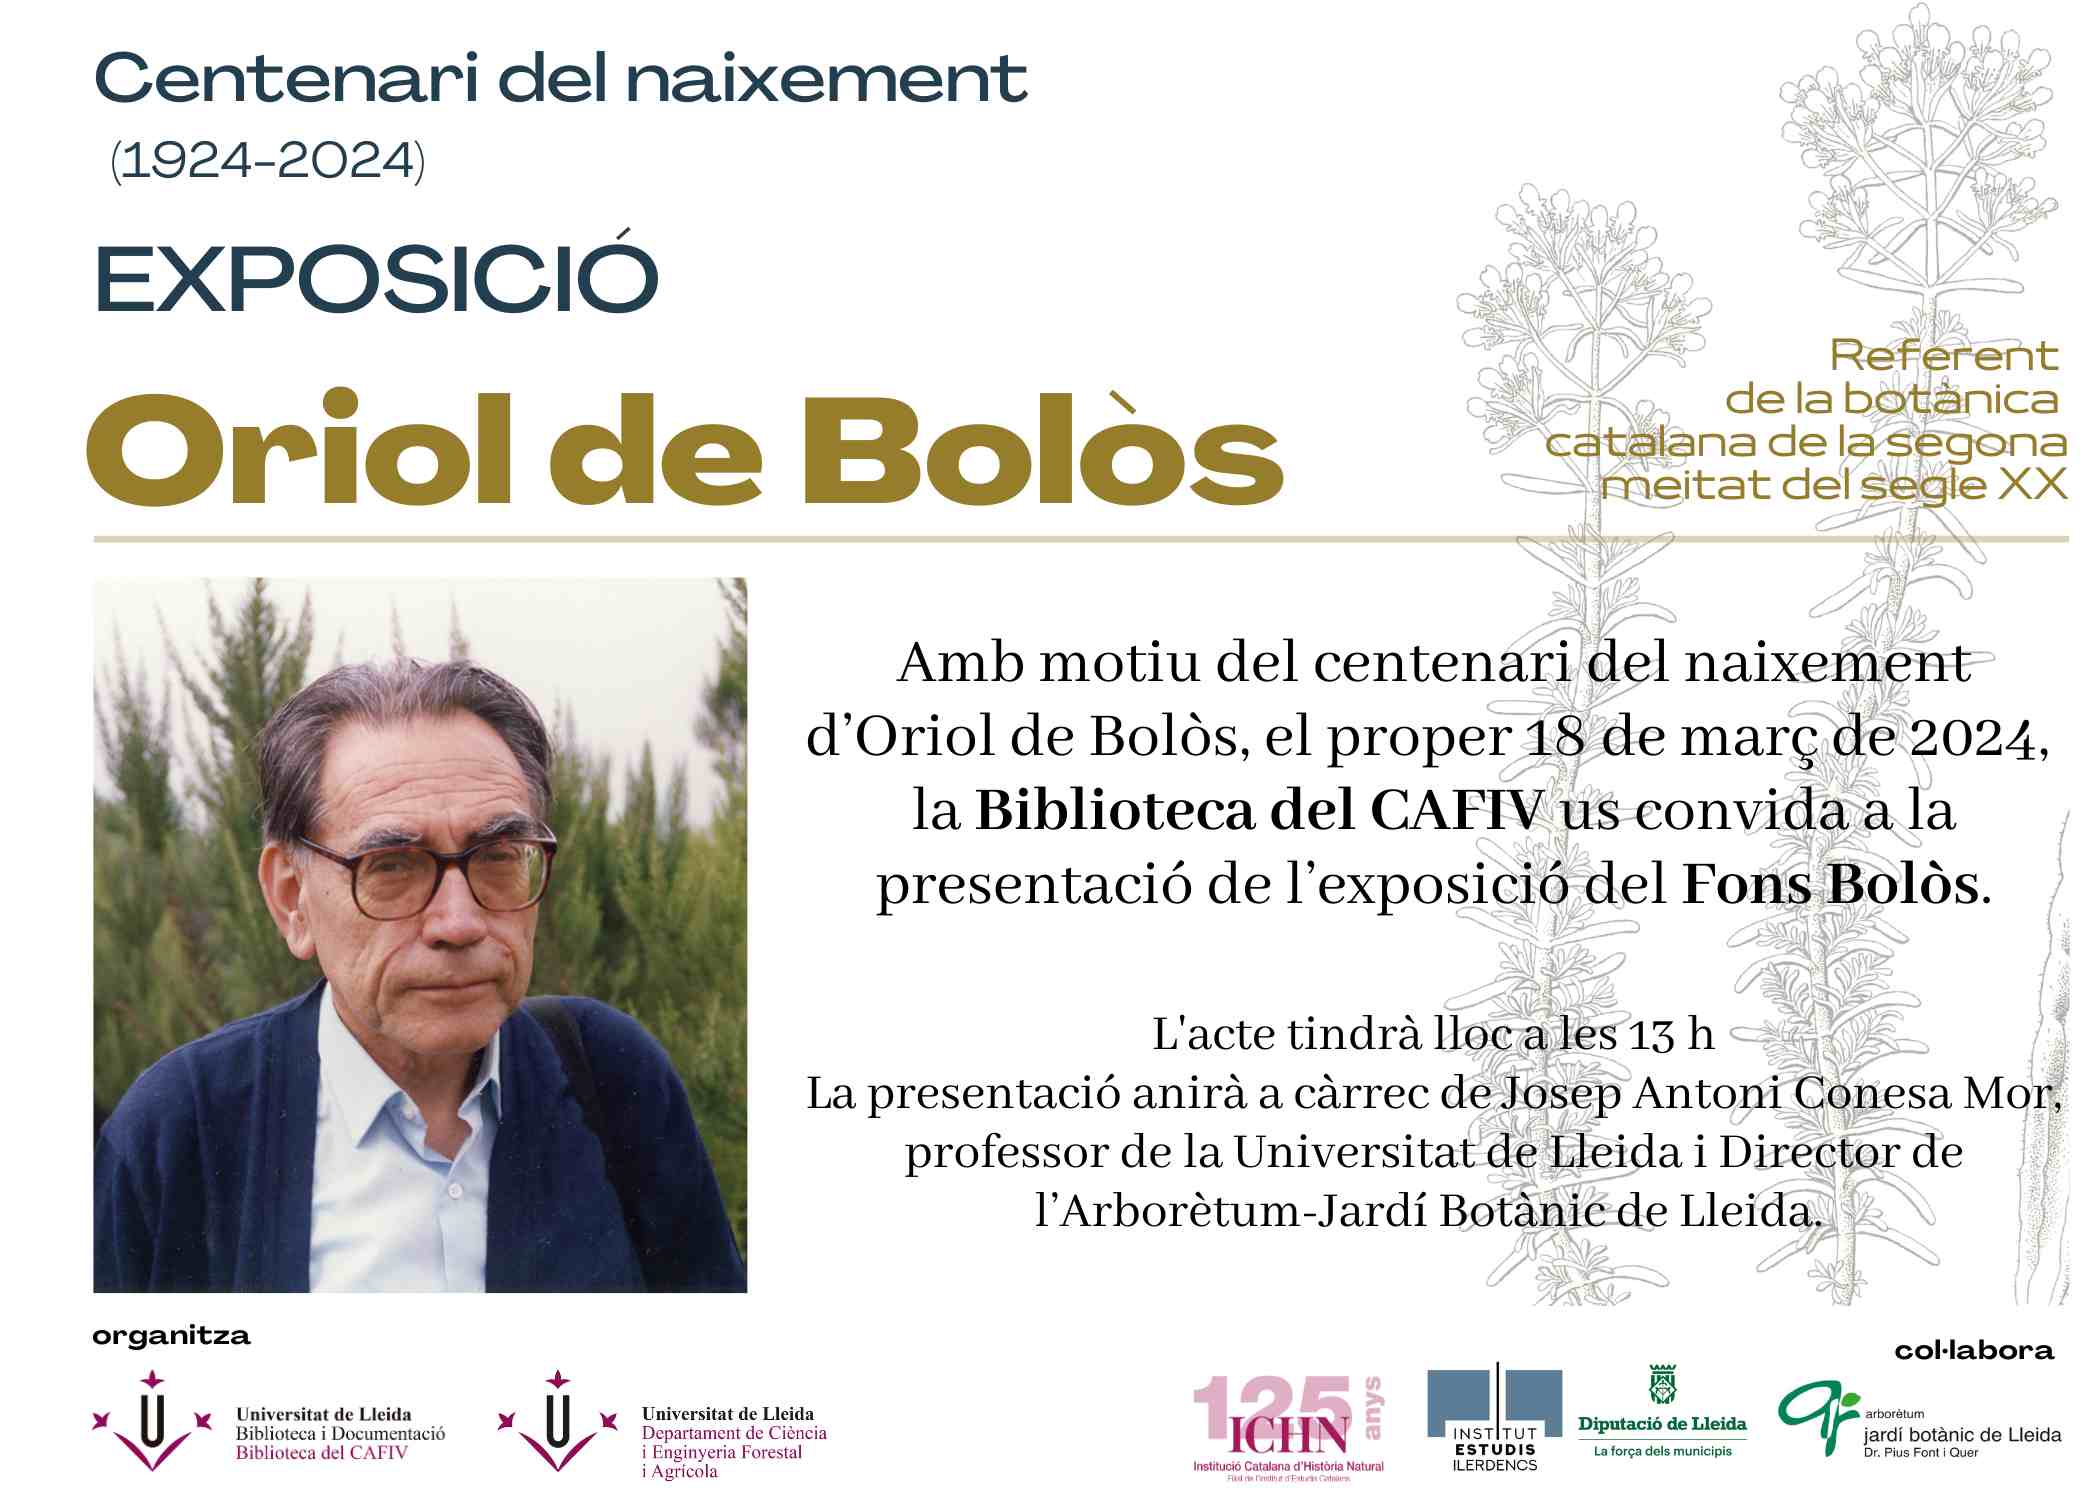 Exposició: Oriol de Bolòs. Referent de la Botànica catalana de la segona meitat del segle XX